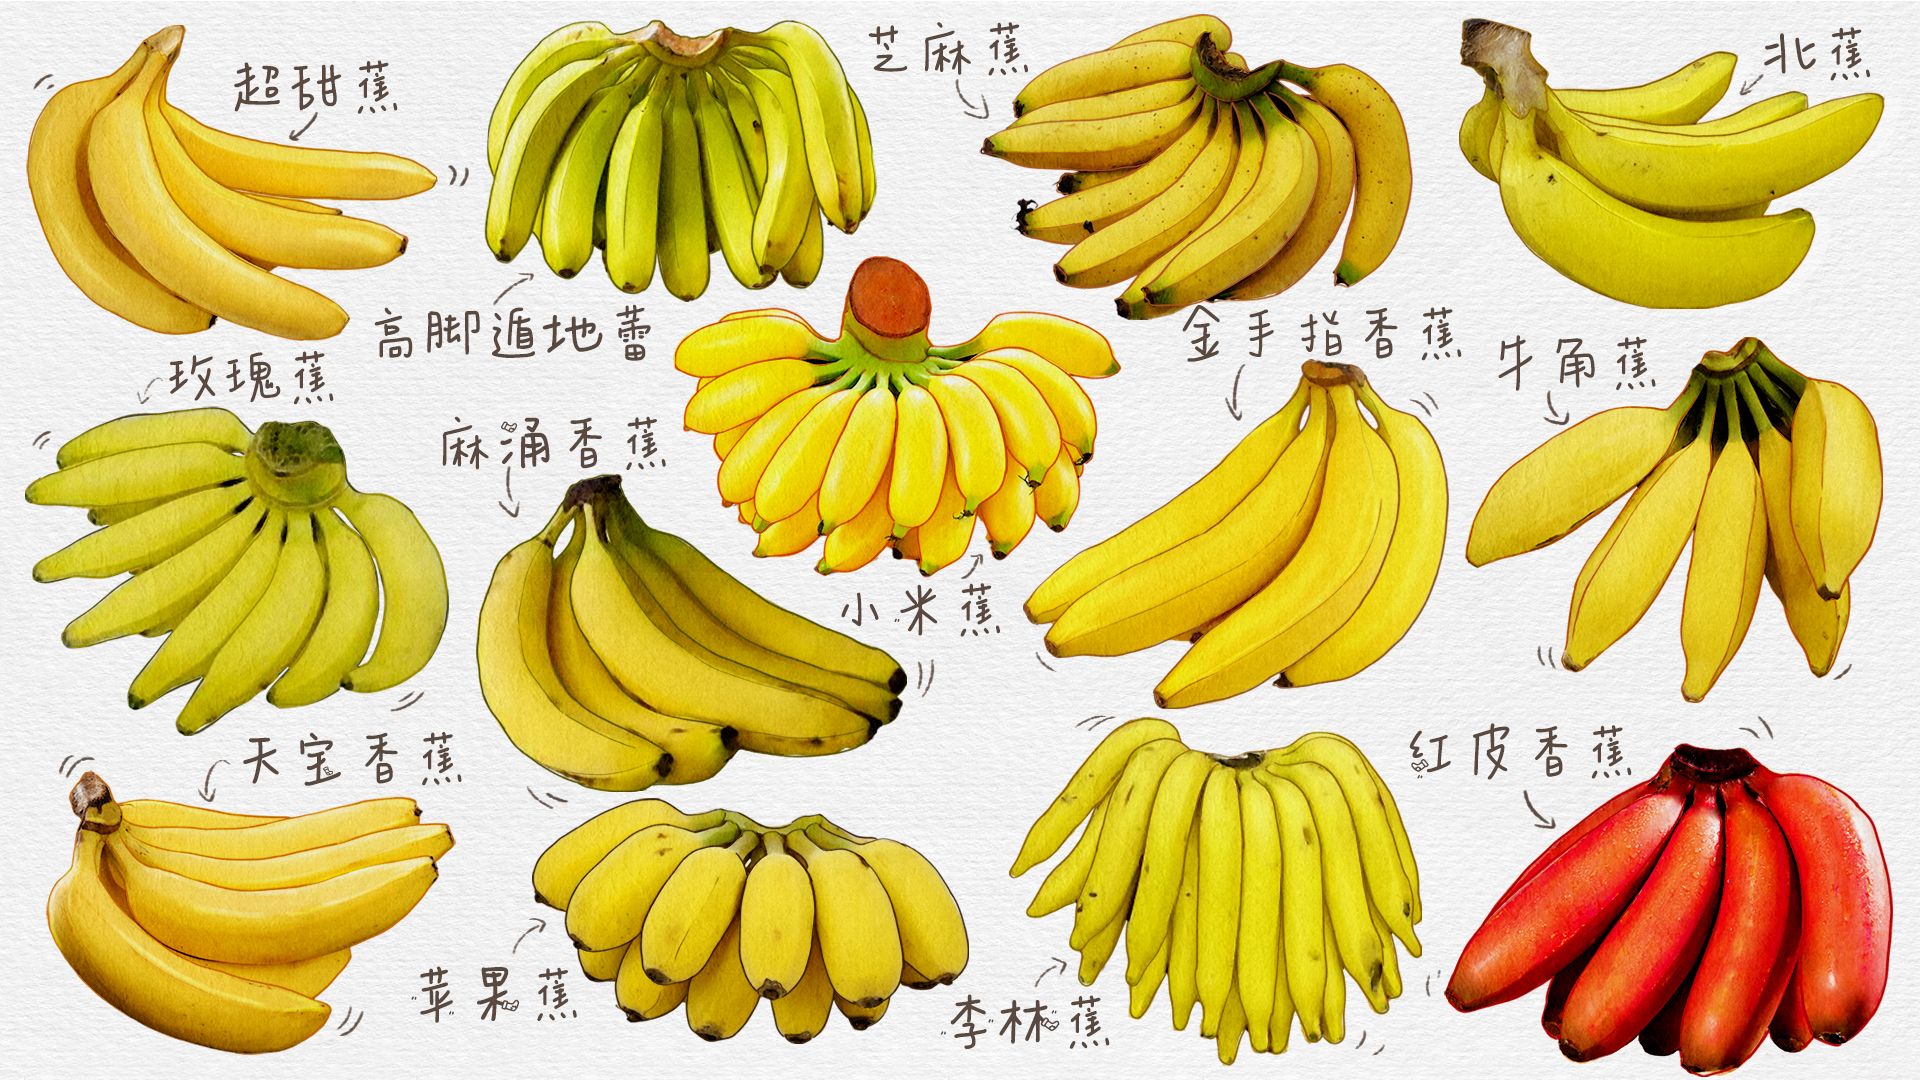 香蕉与芭蕉的区别 香蕉与芭蕉的功效区别 | 说明书网